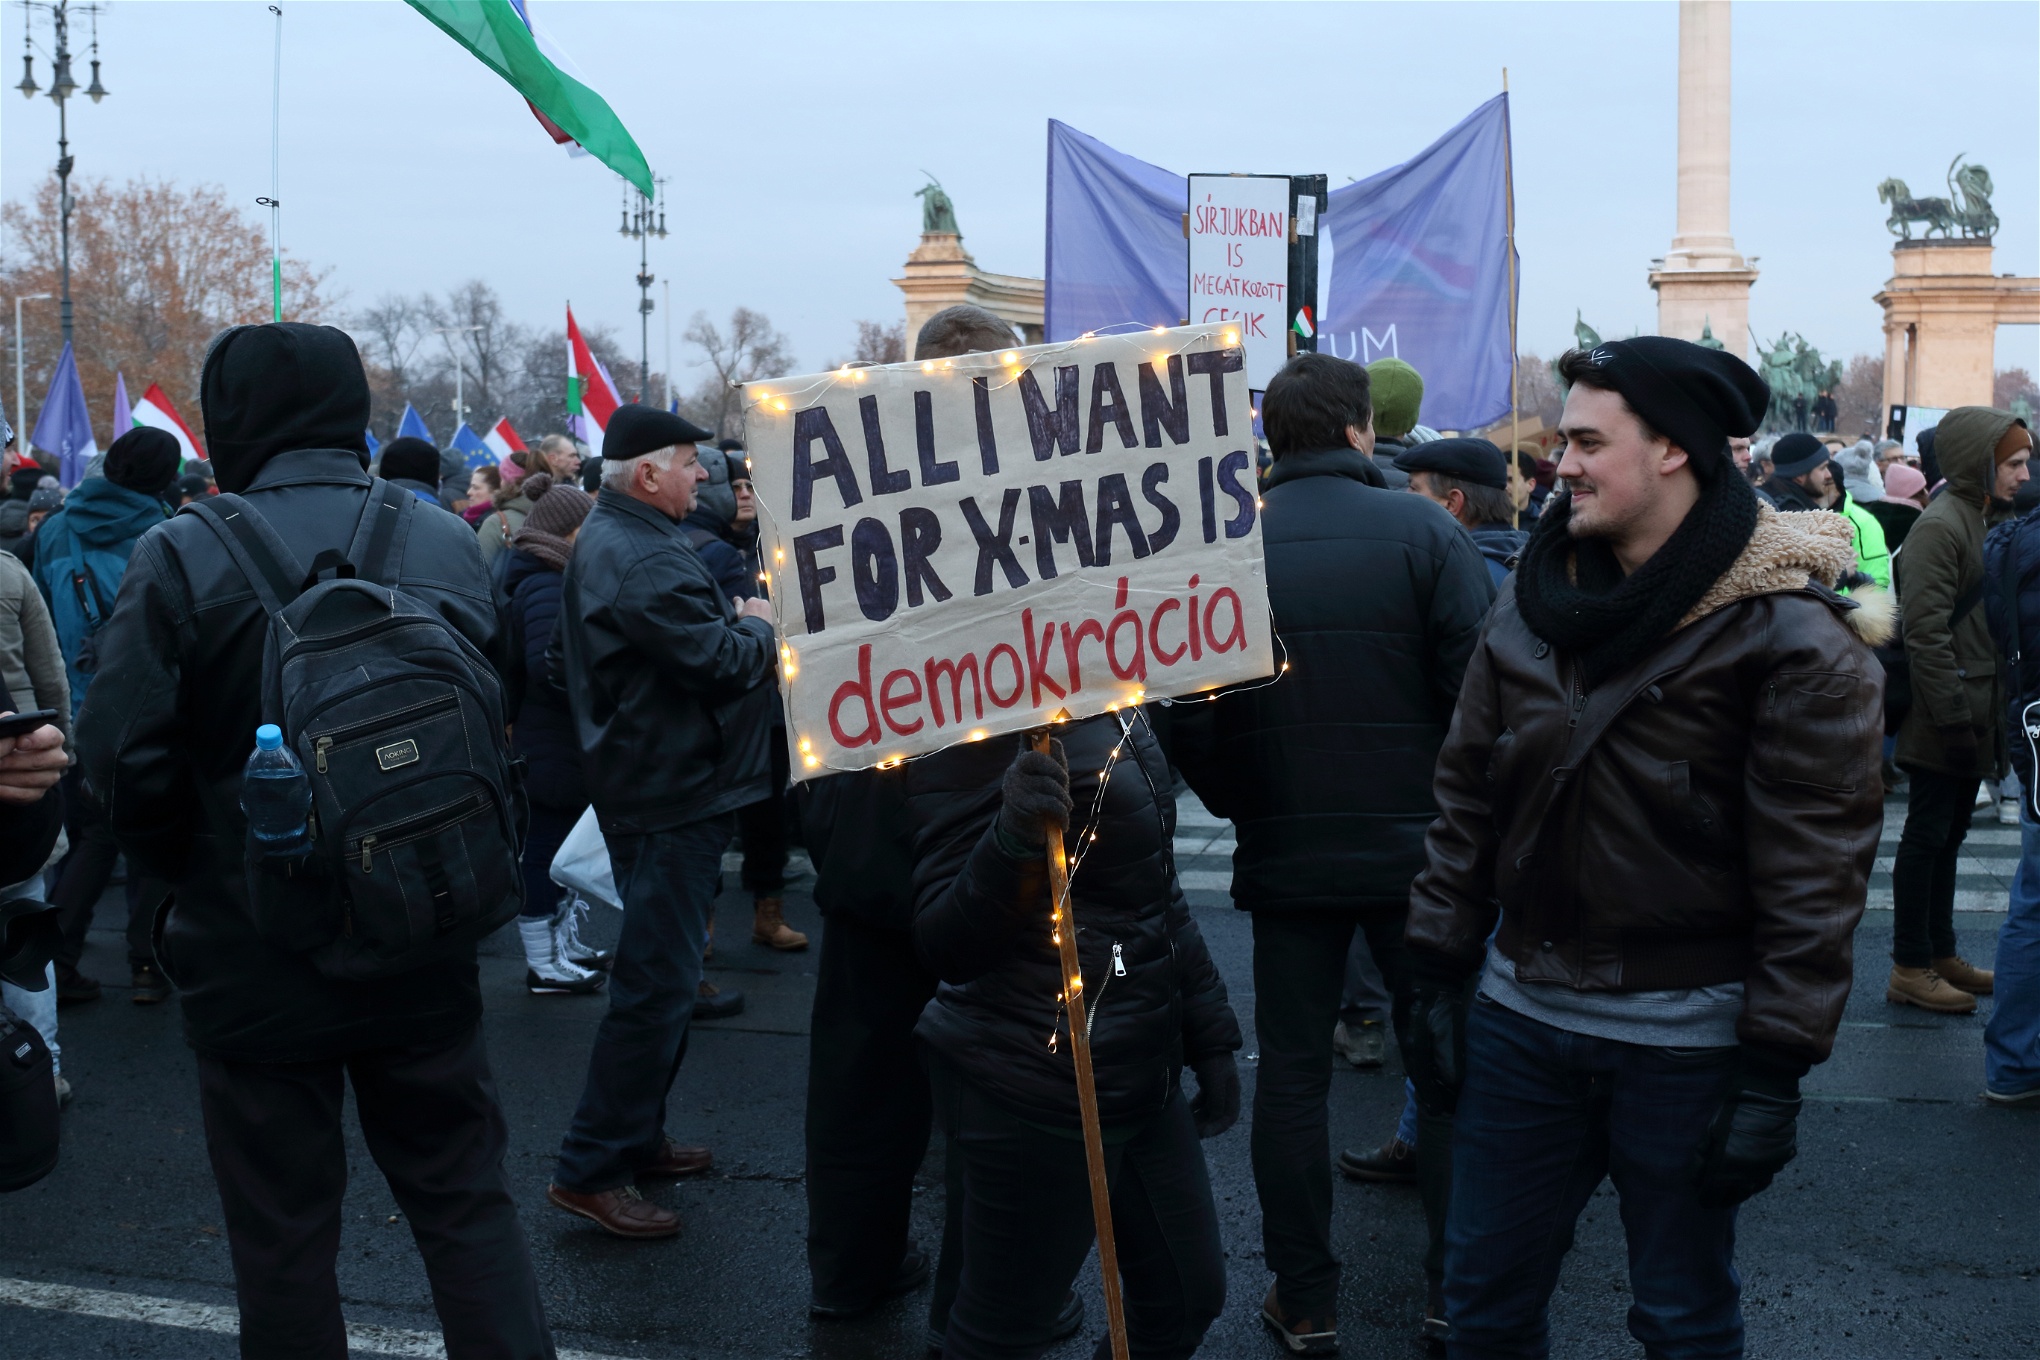 De regeringskritiska protesterna i Budapest har lockat tiotusentals deltagare som vill försvara demokratin.